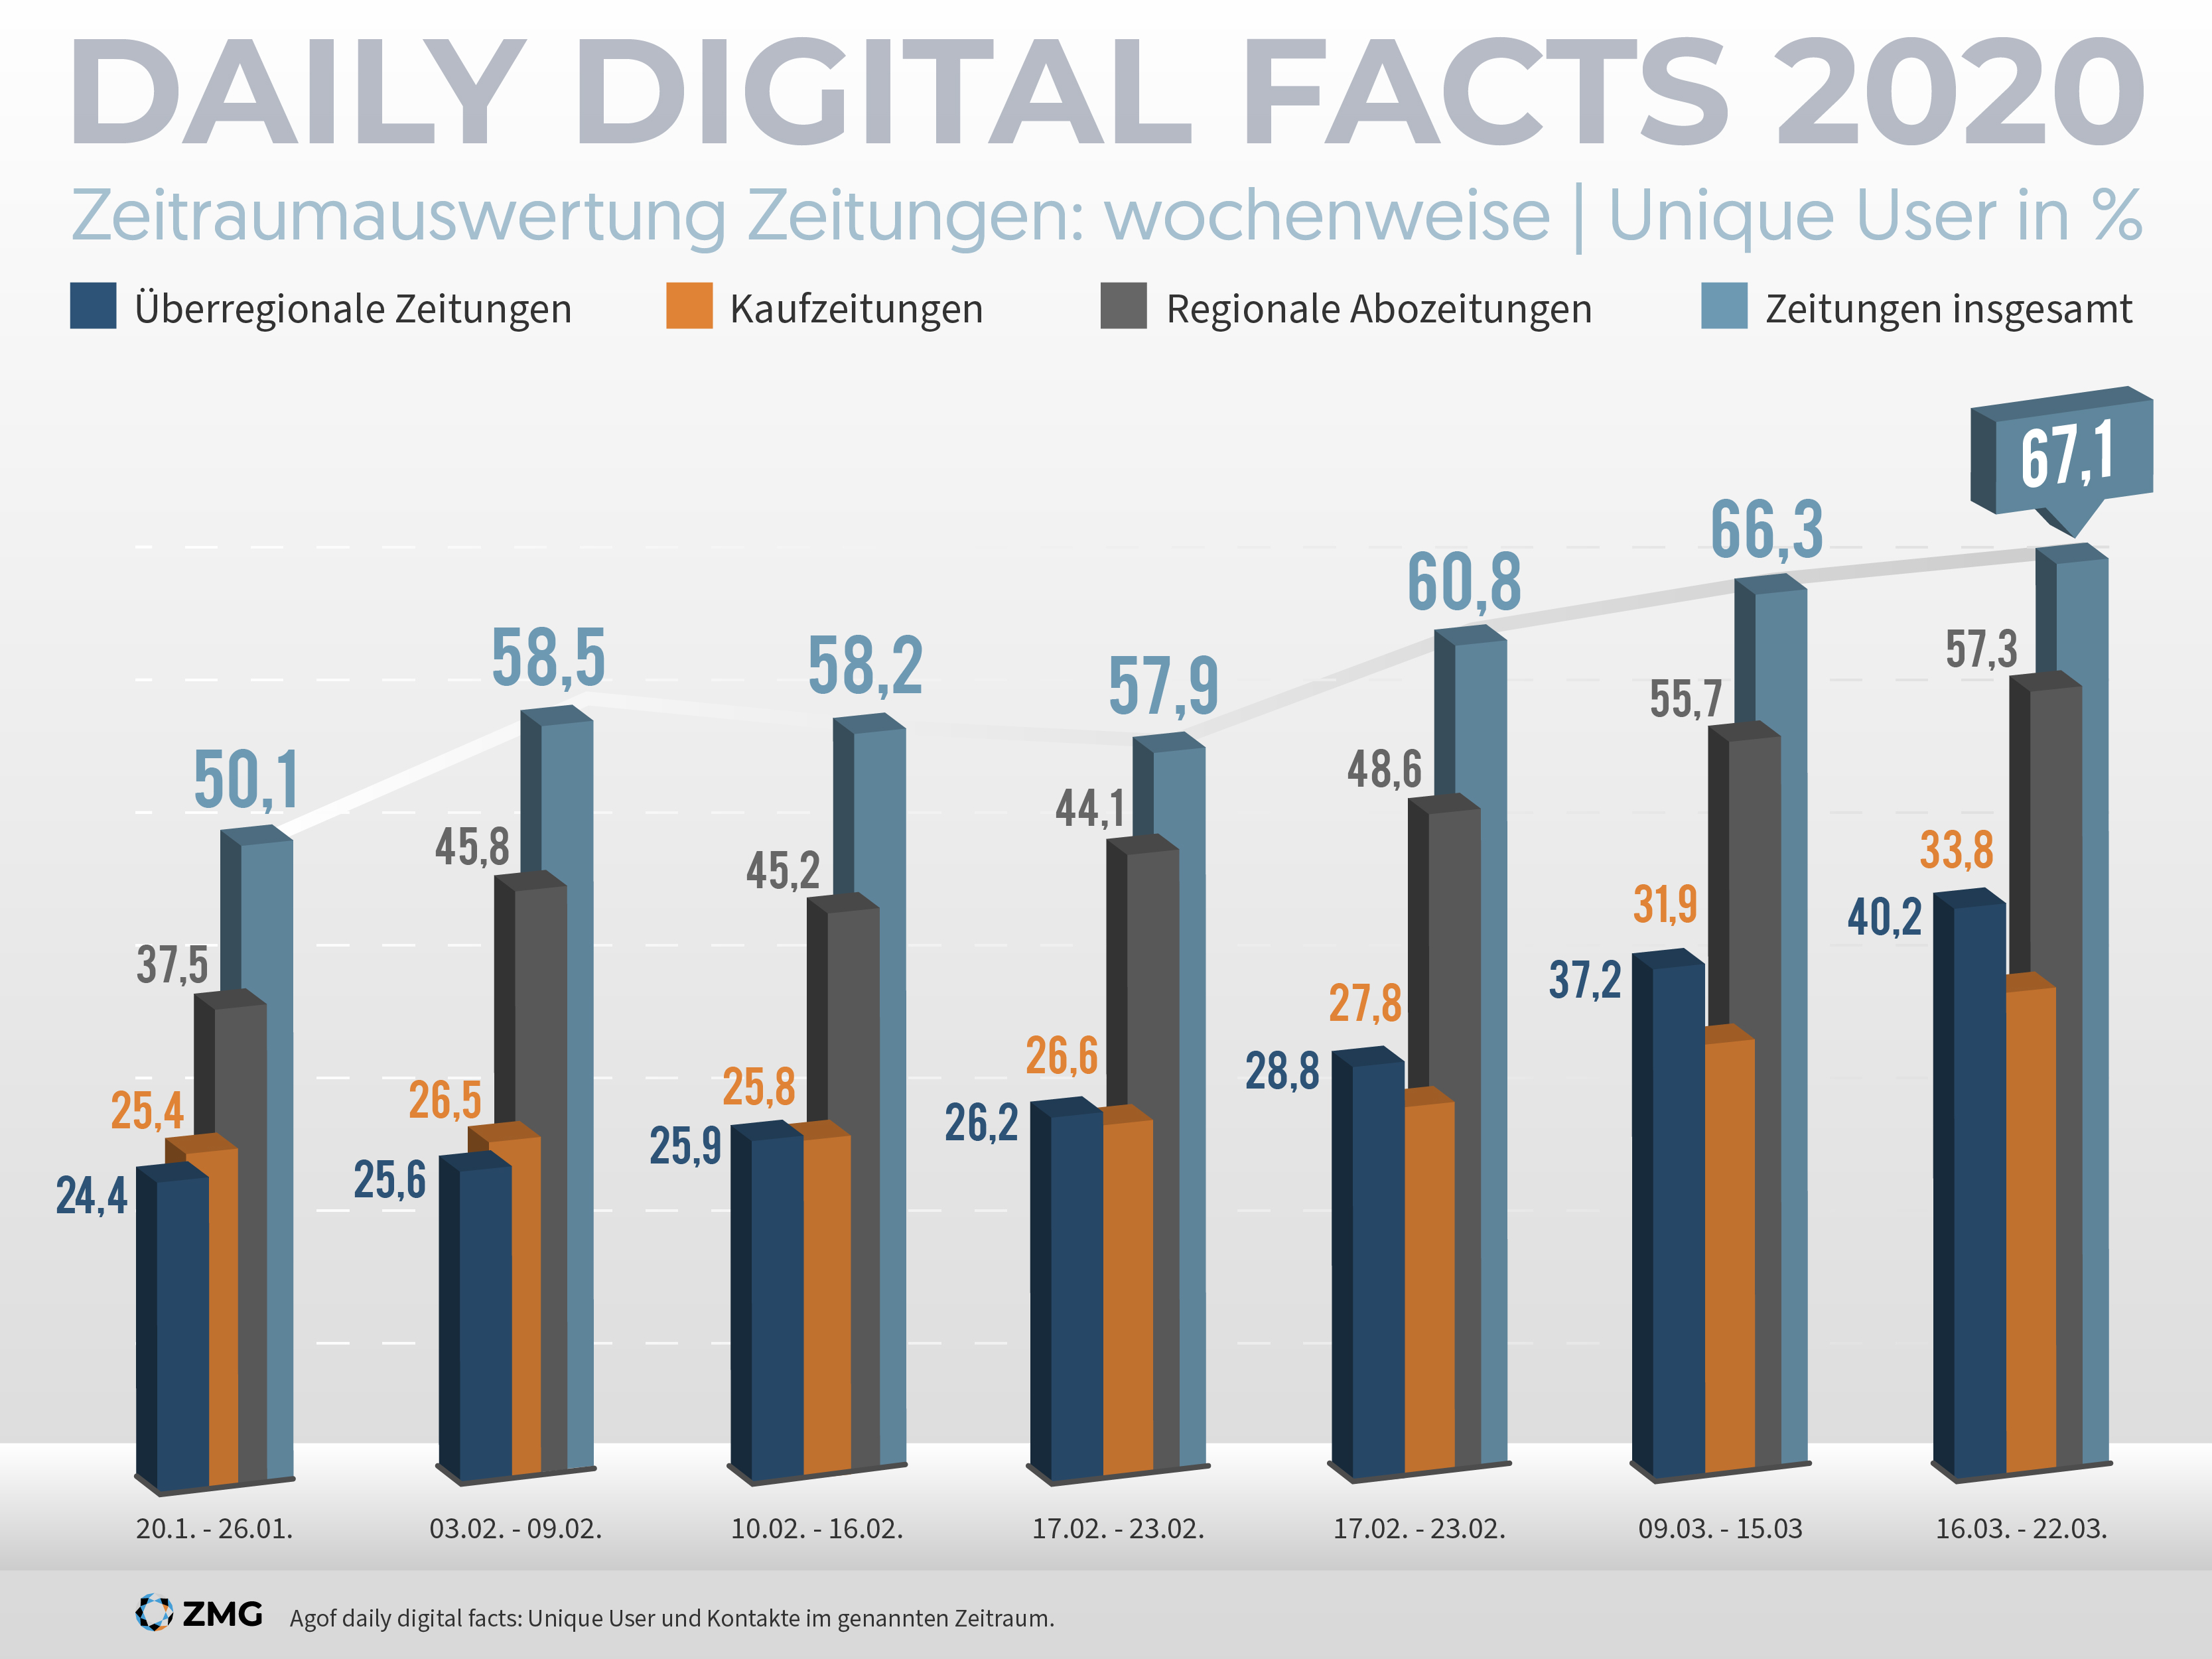 Digitale Reichweiten der Zeitungen steigen sprunghaft